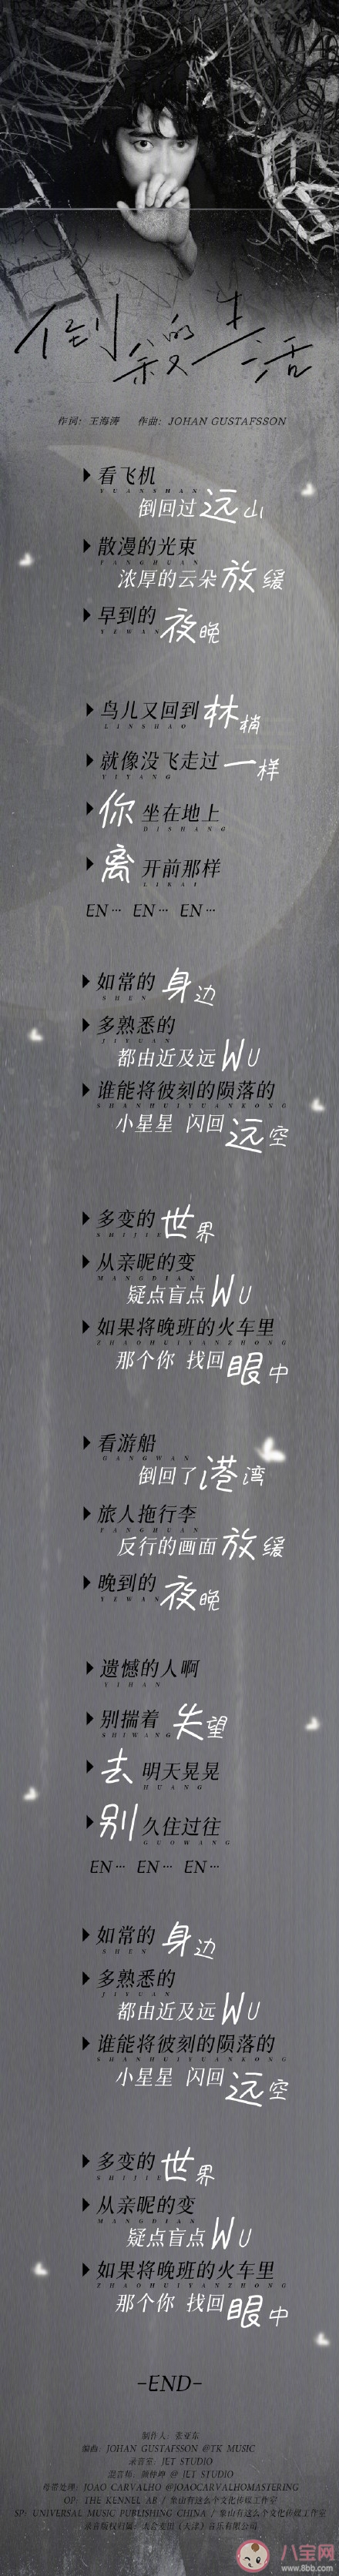 李易峰新歌《倒叙的生活》MV发布  《倒叙的生活》完整版歌词内容